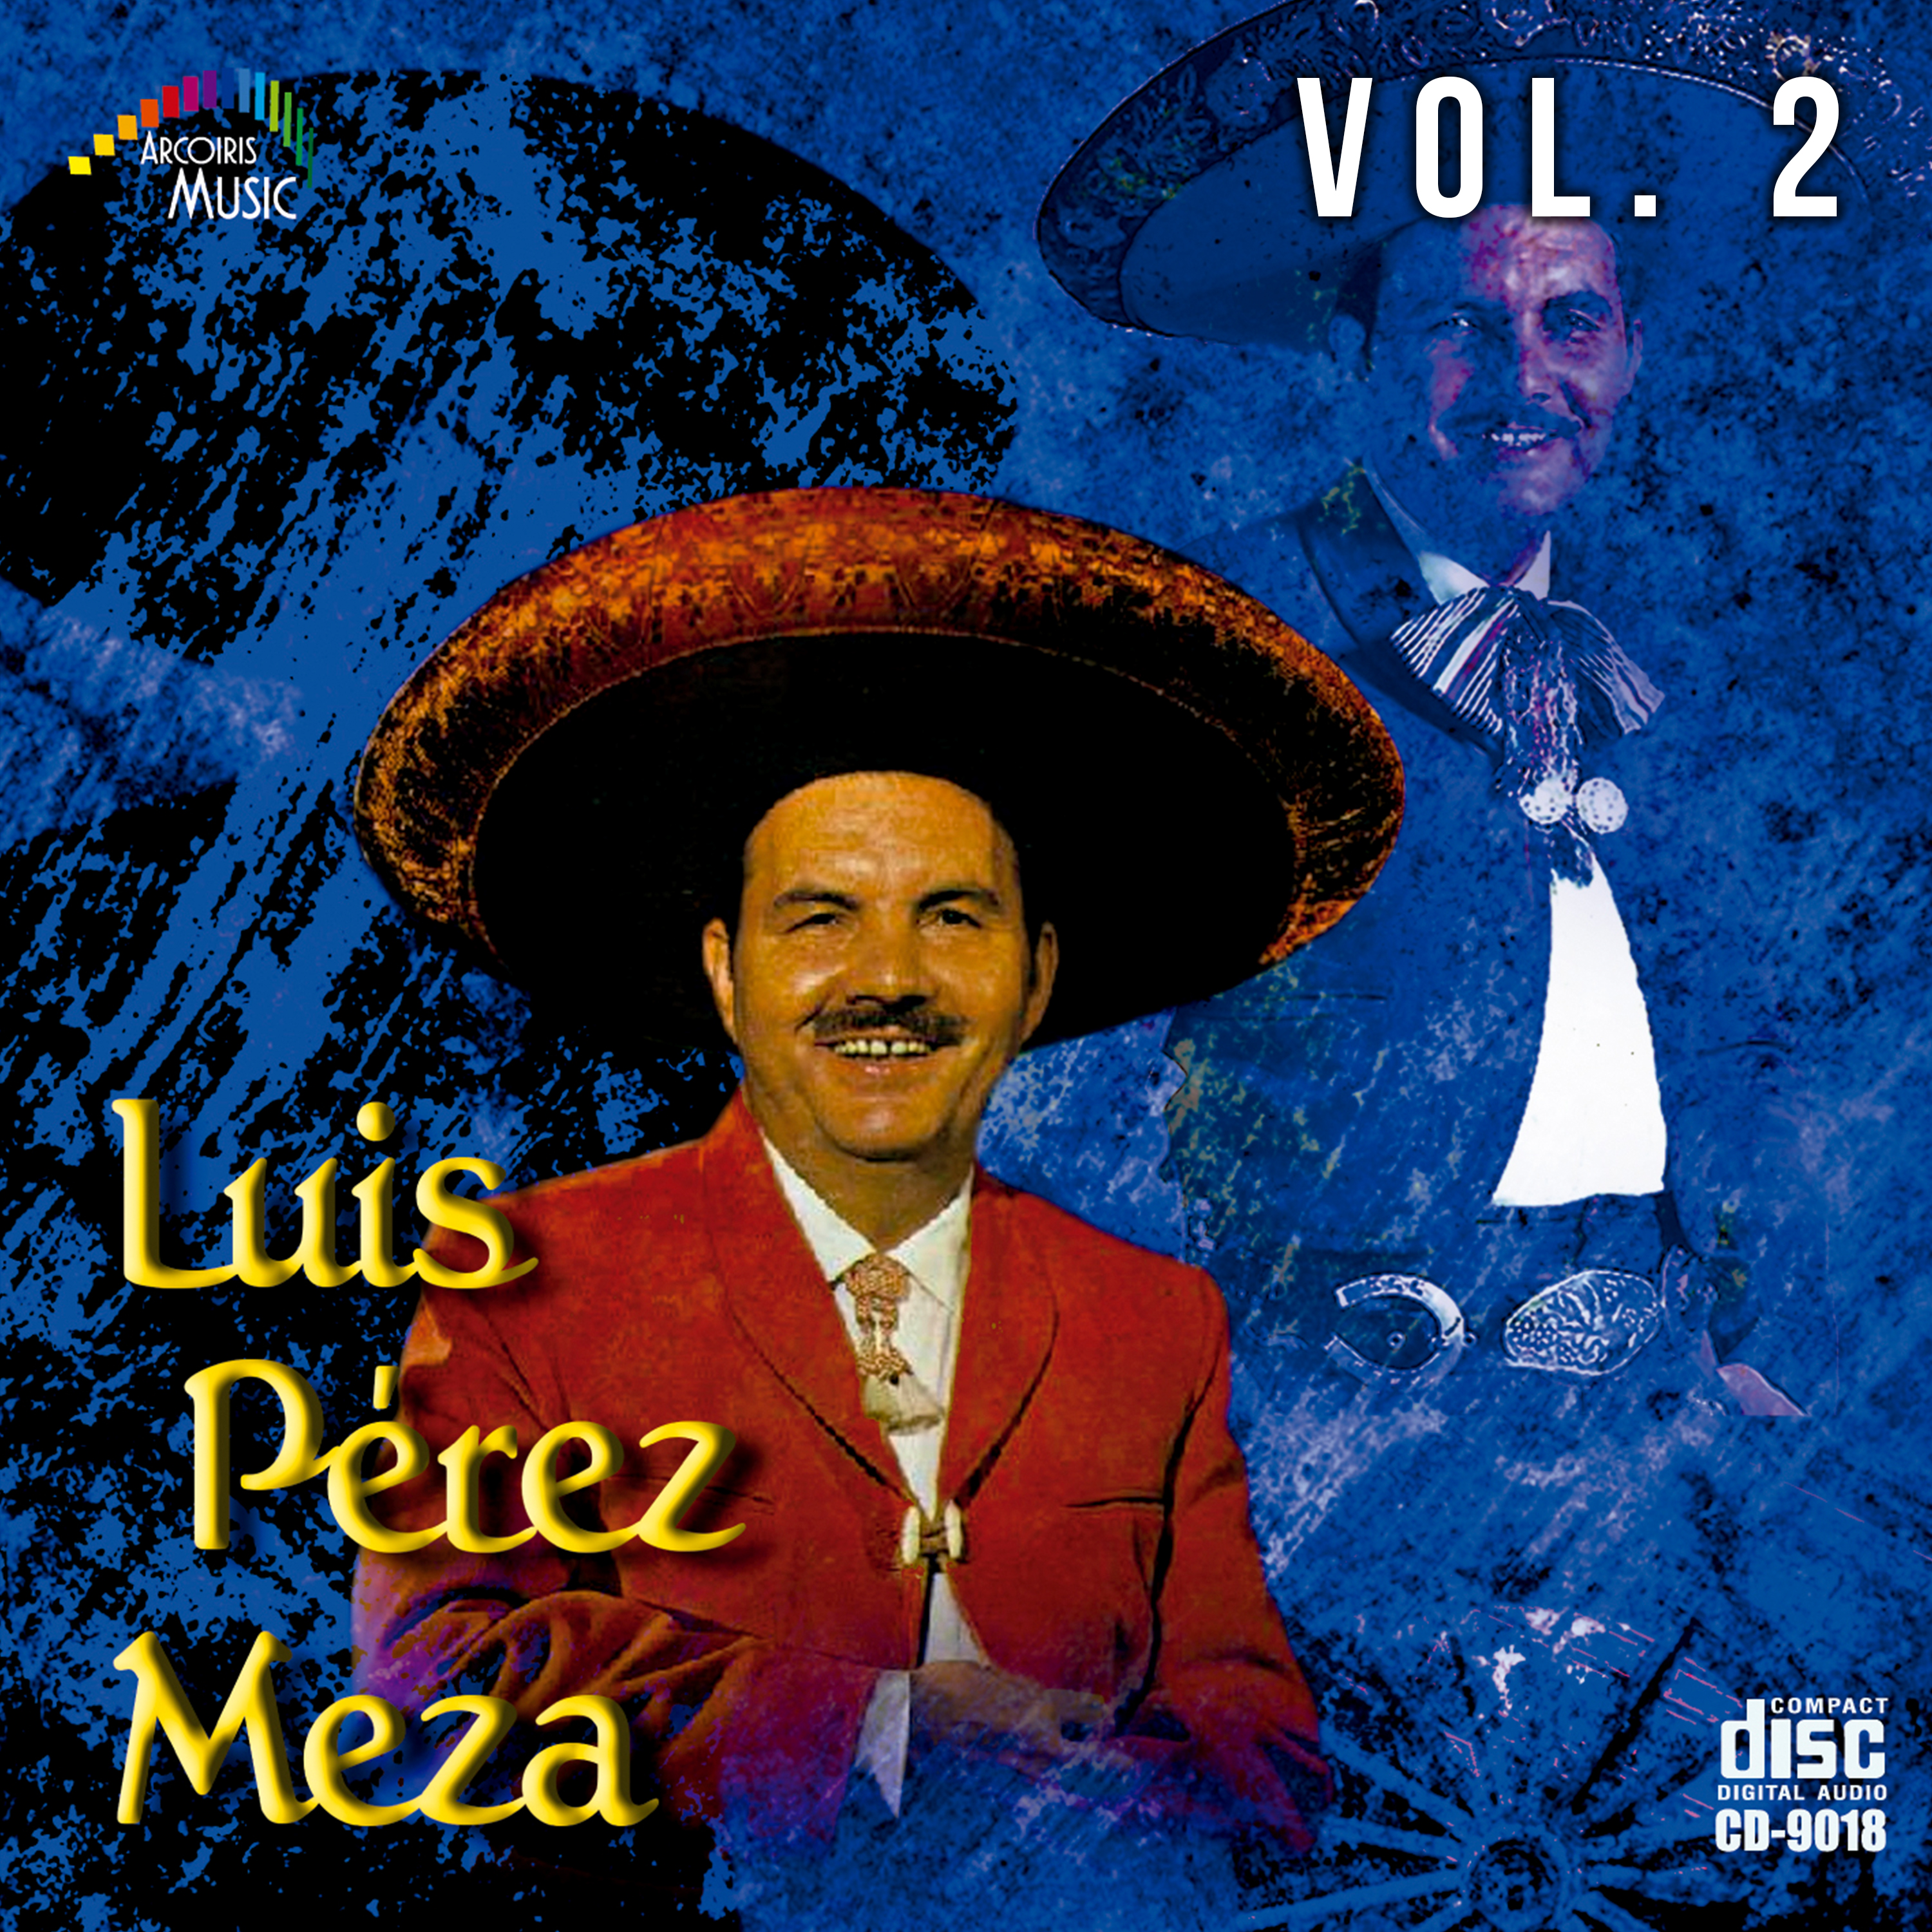 Luis Pe rez Meza Vol. 2